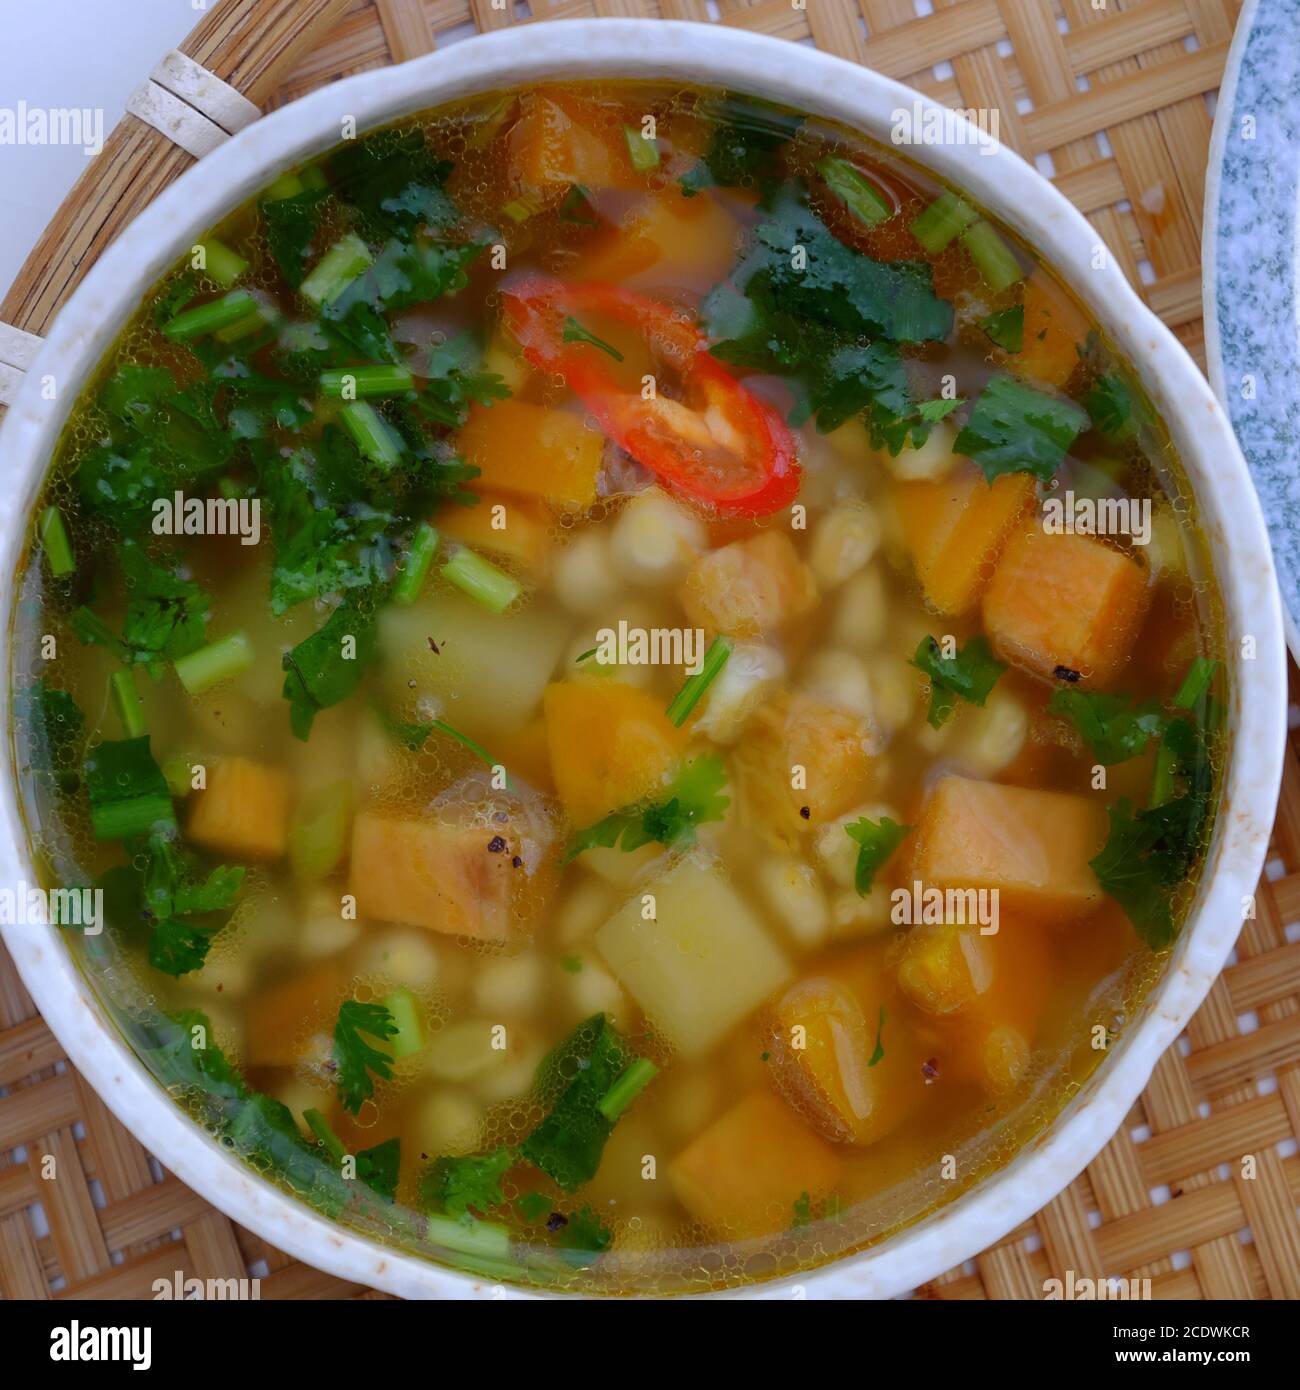 Vue de dessus bol à soupe de légumes pour repas végétalien avec des ingrédients simples comme la carotte, la pomme de terre, le maïs. Végétarien vietnamien manger que bon pour la santé Banque D'Images